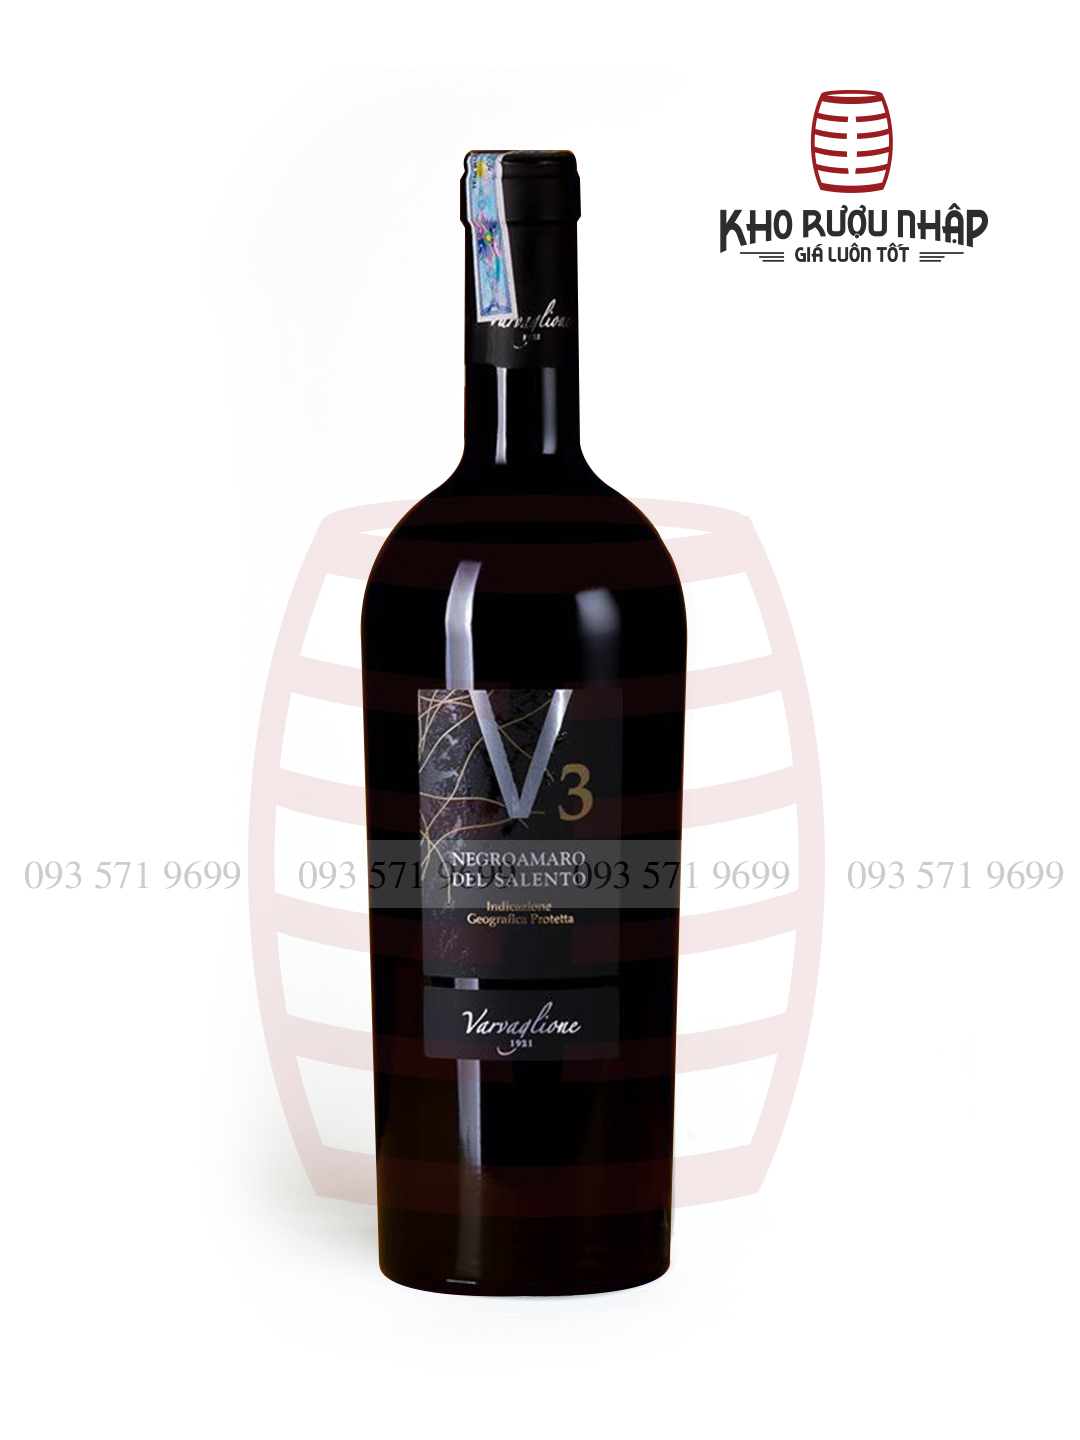 Rượu vang V3 Negroamaro – NIE-690 nhập khẩu chính hãng